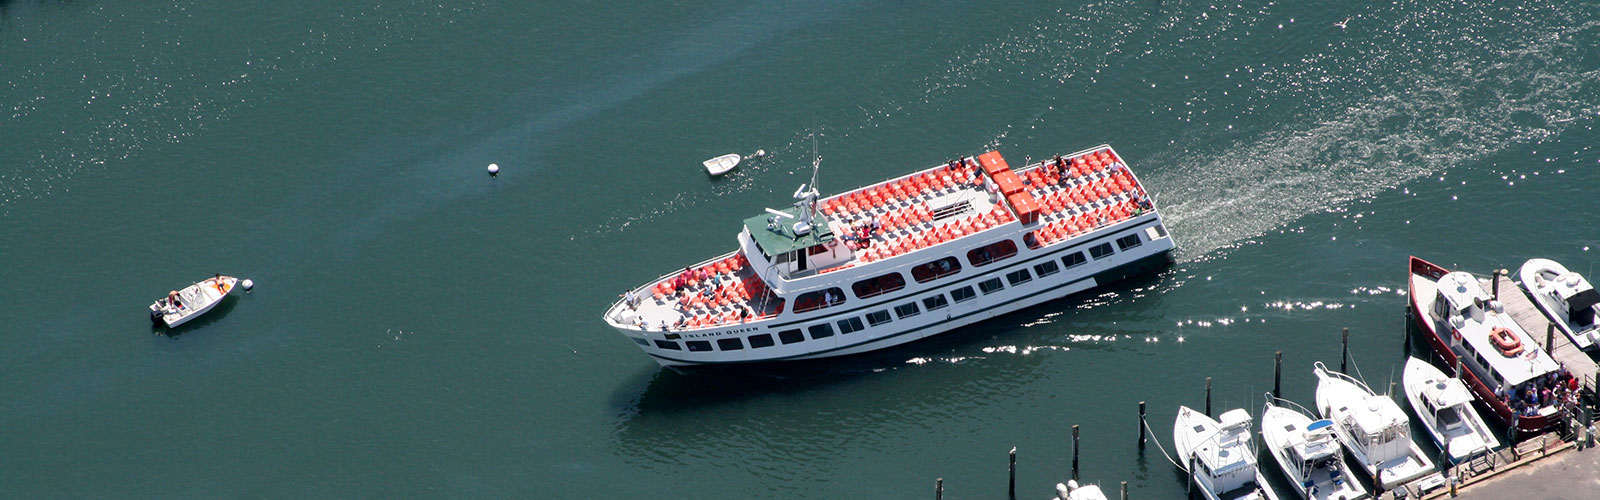 Island Queen Ferry to Martha's Vineyard